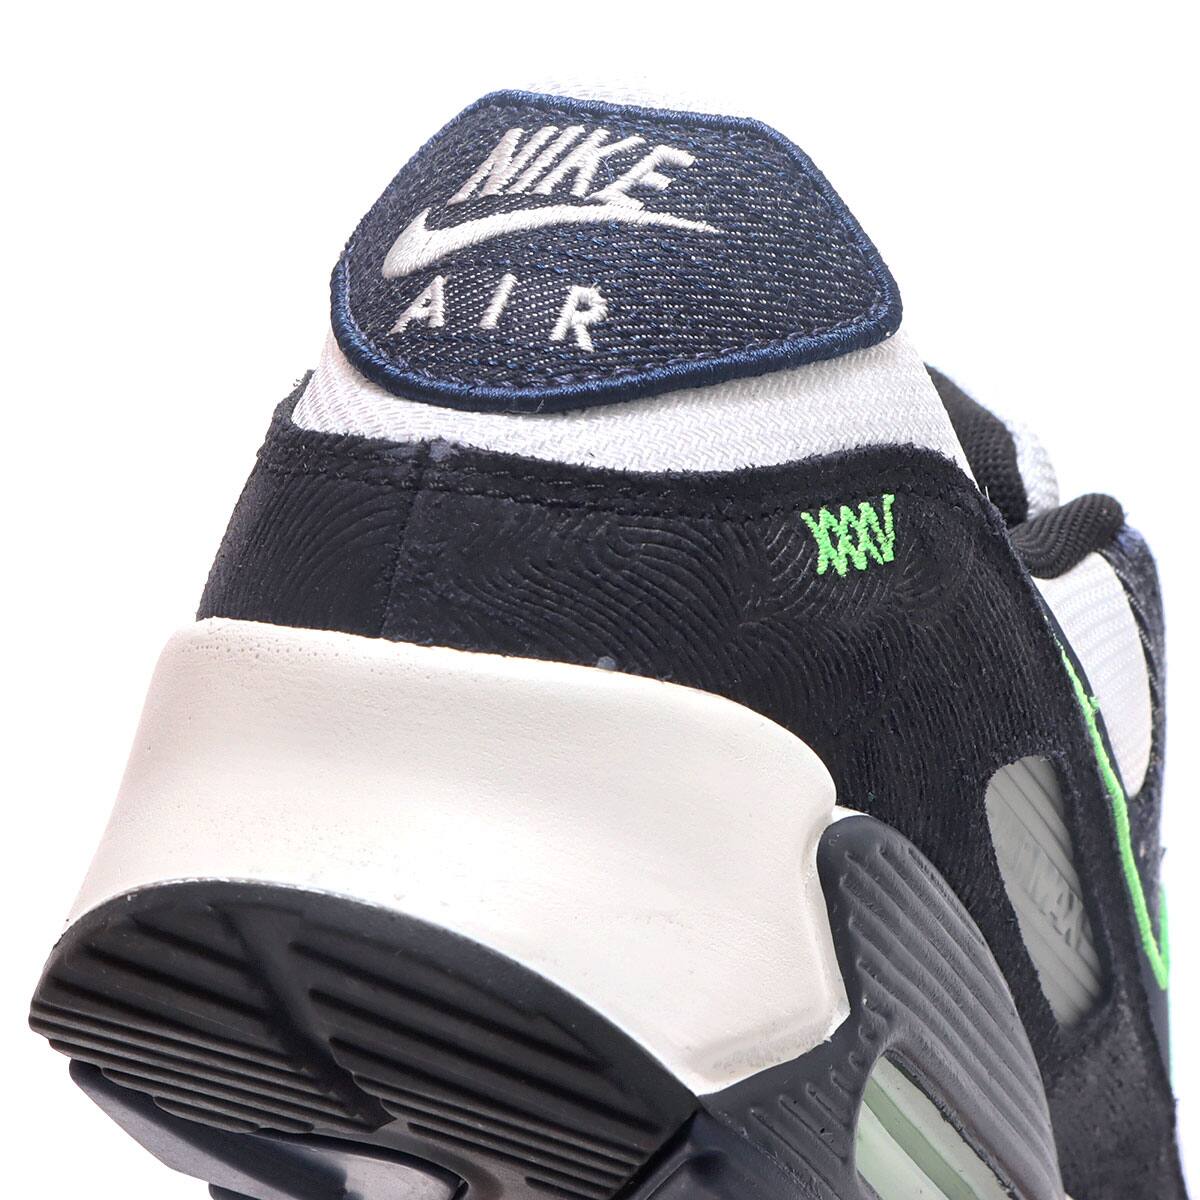 26771円 出群 ナイキ Nike メンズ ランニング ウォーキング エアマックス 90 シューズ 靴Black Obsidian Scream Green Summit White